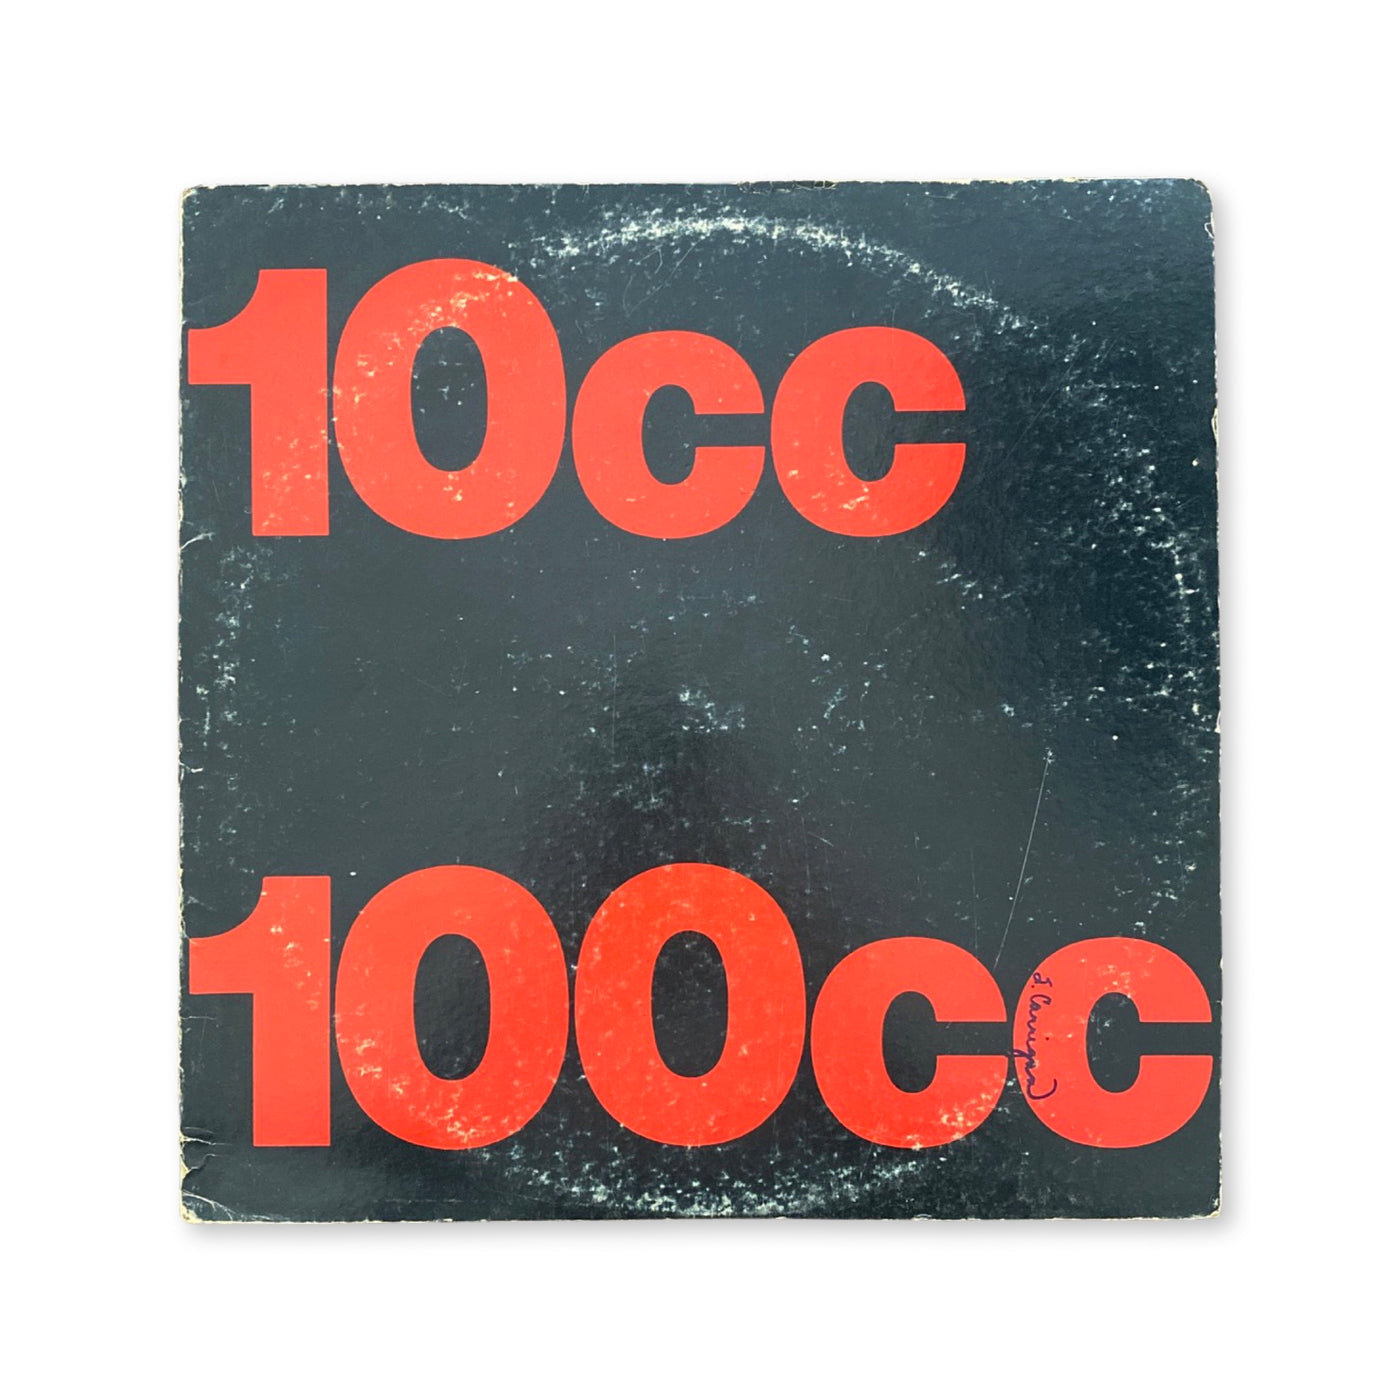 10cc - 100cc